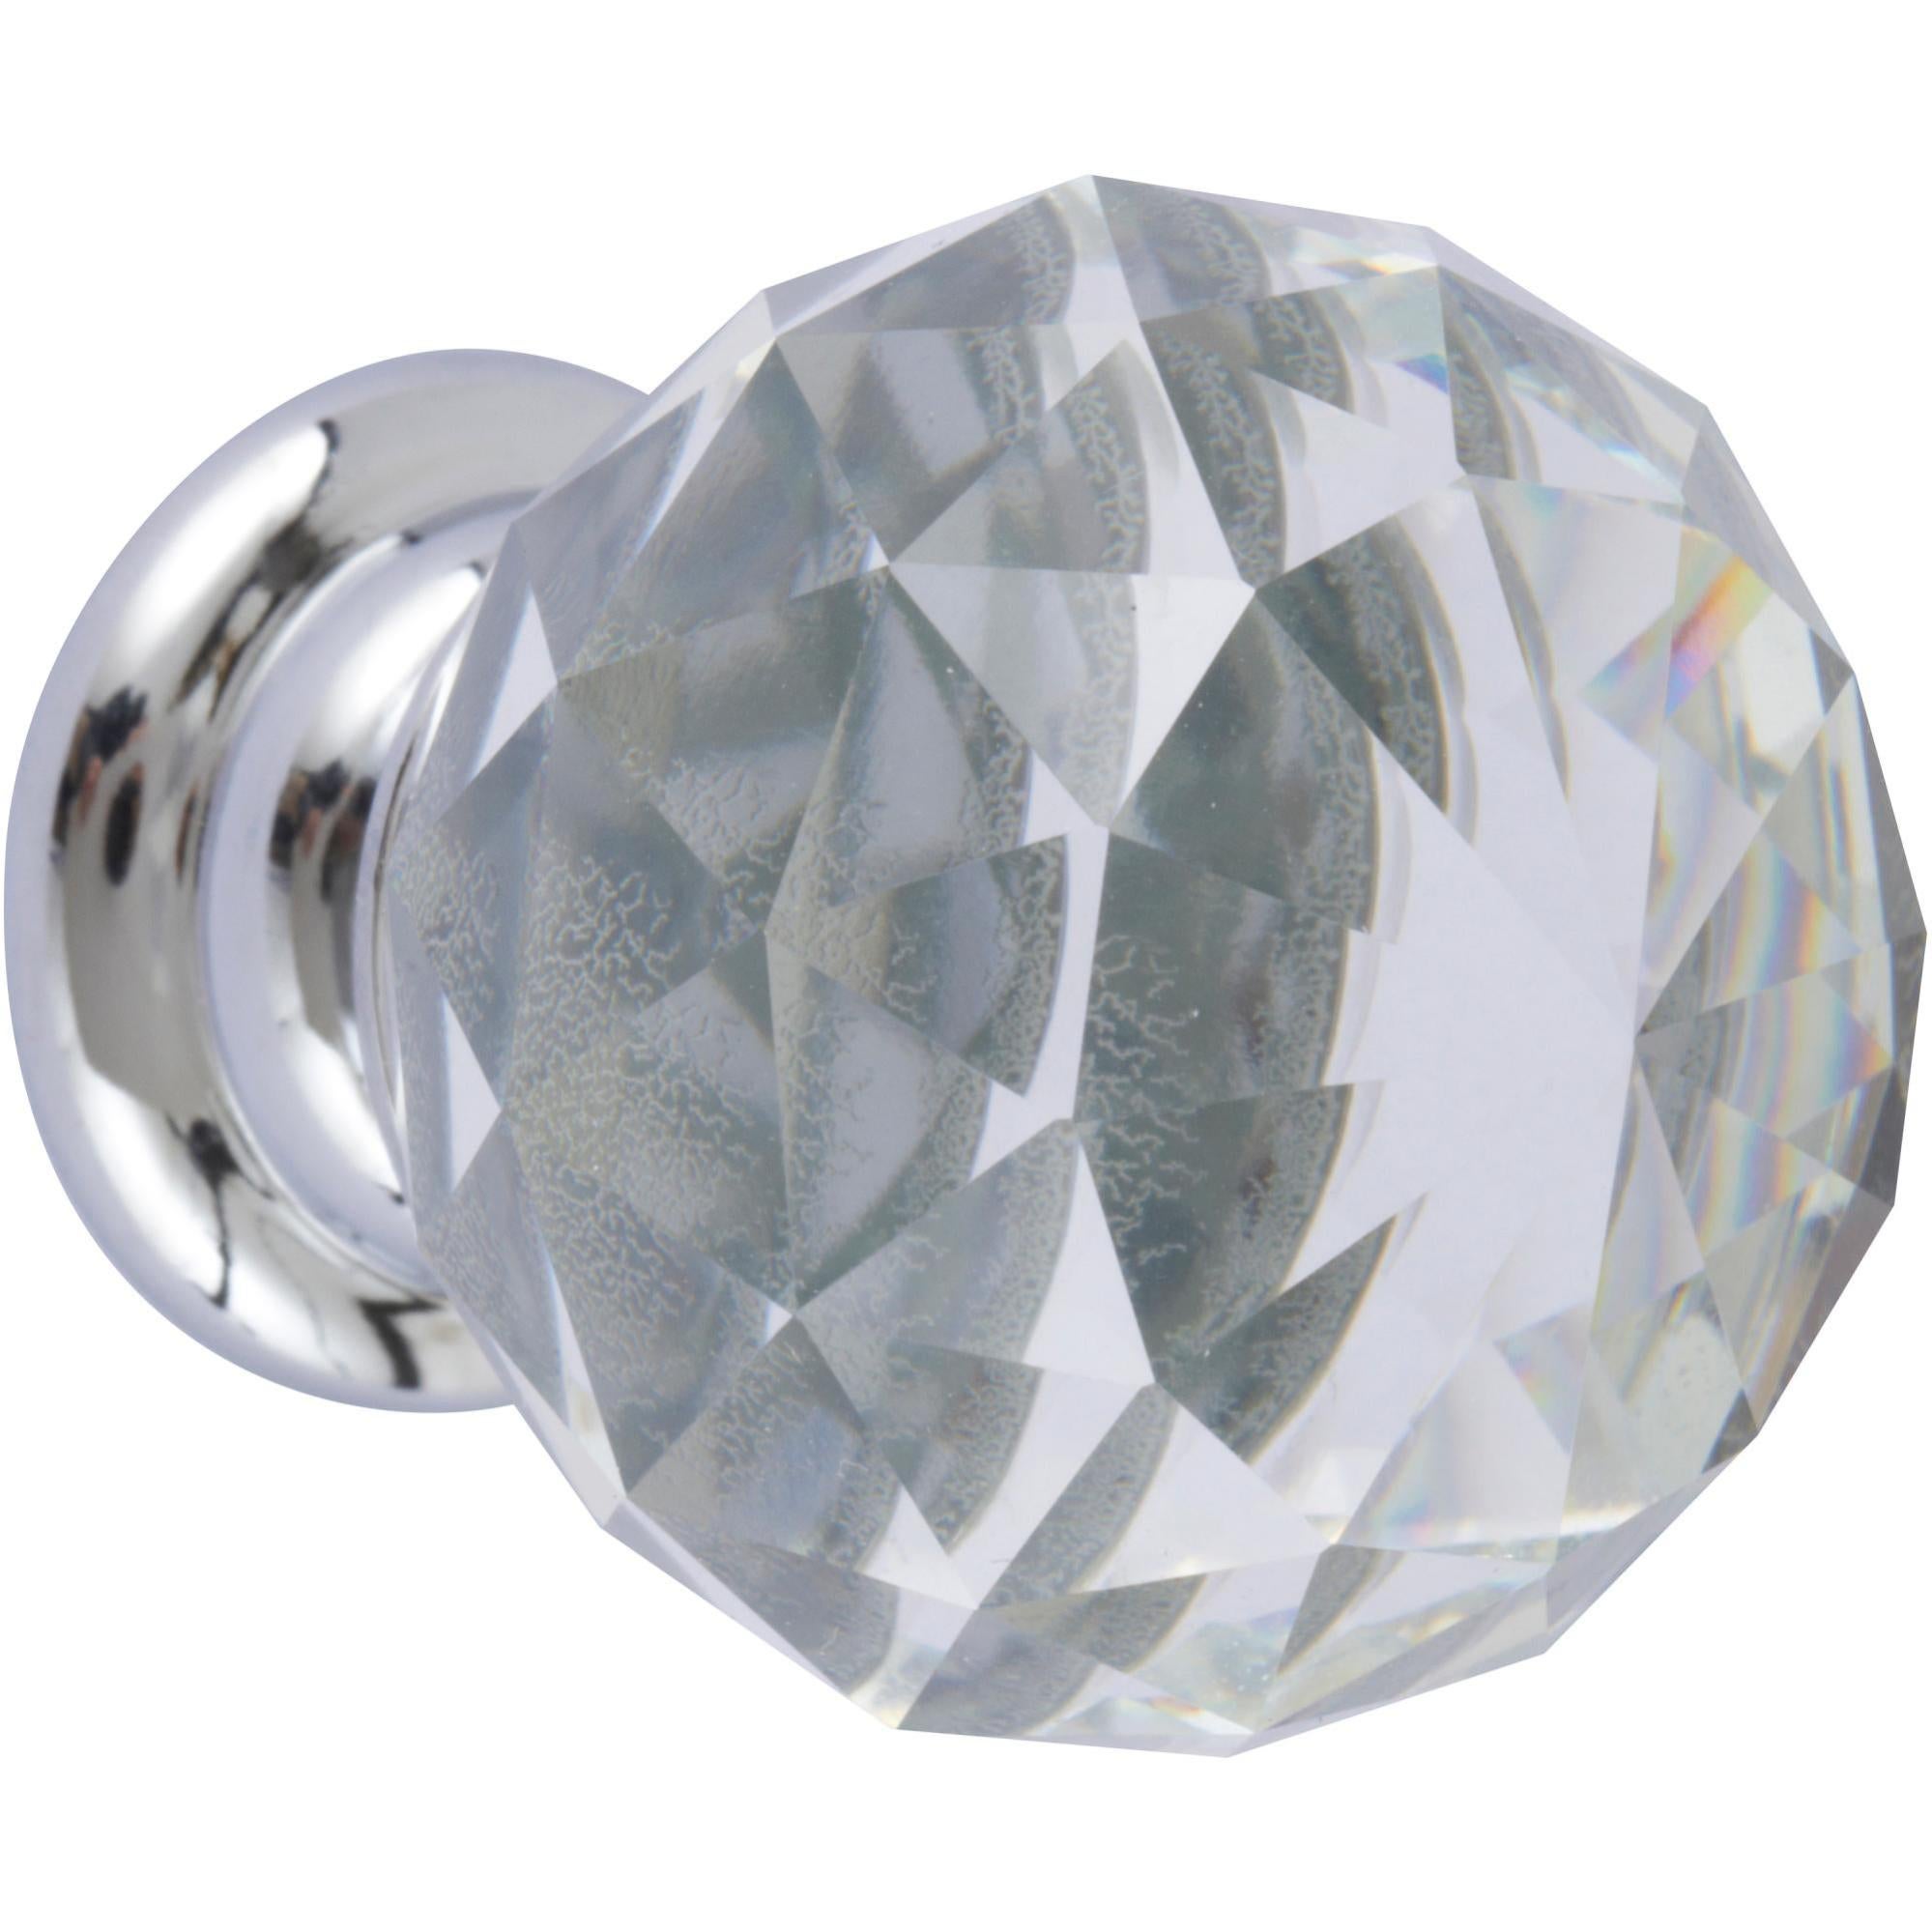 Boutons de Porte en Cristal,10 Pièces Poignées Boutons Poignee de Meuble Diamant avec Boutons de Vis pour Les Tiroirs 